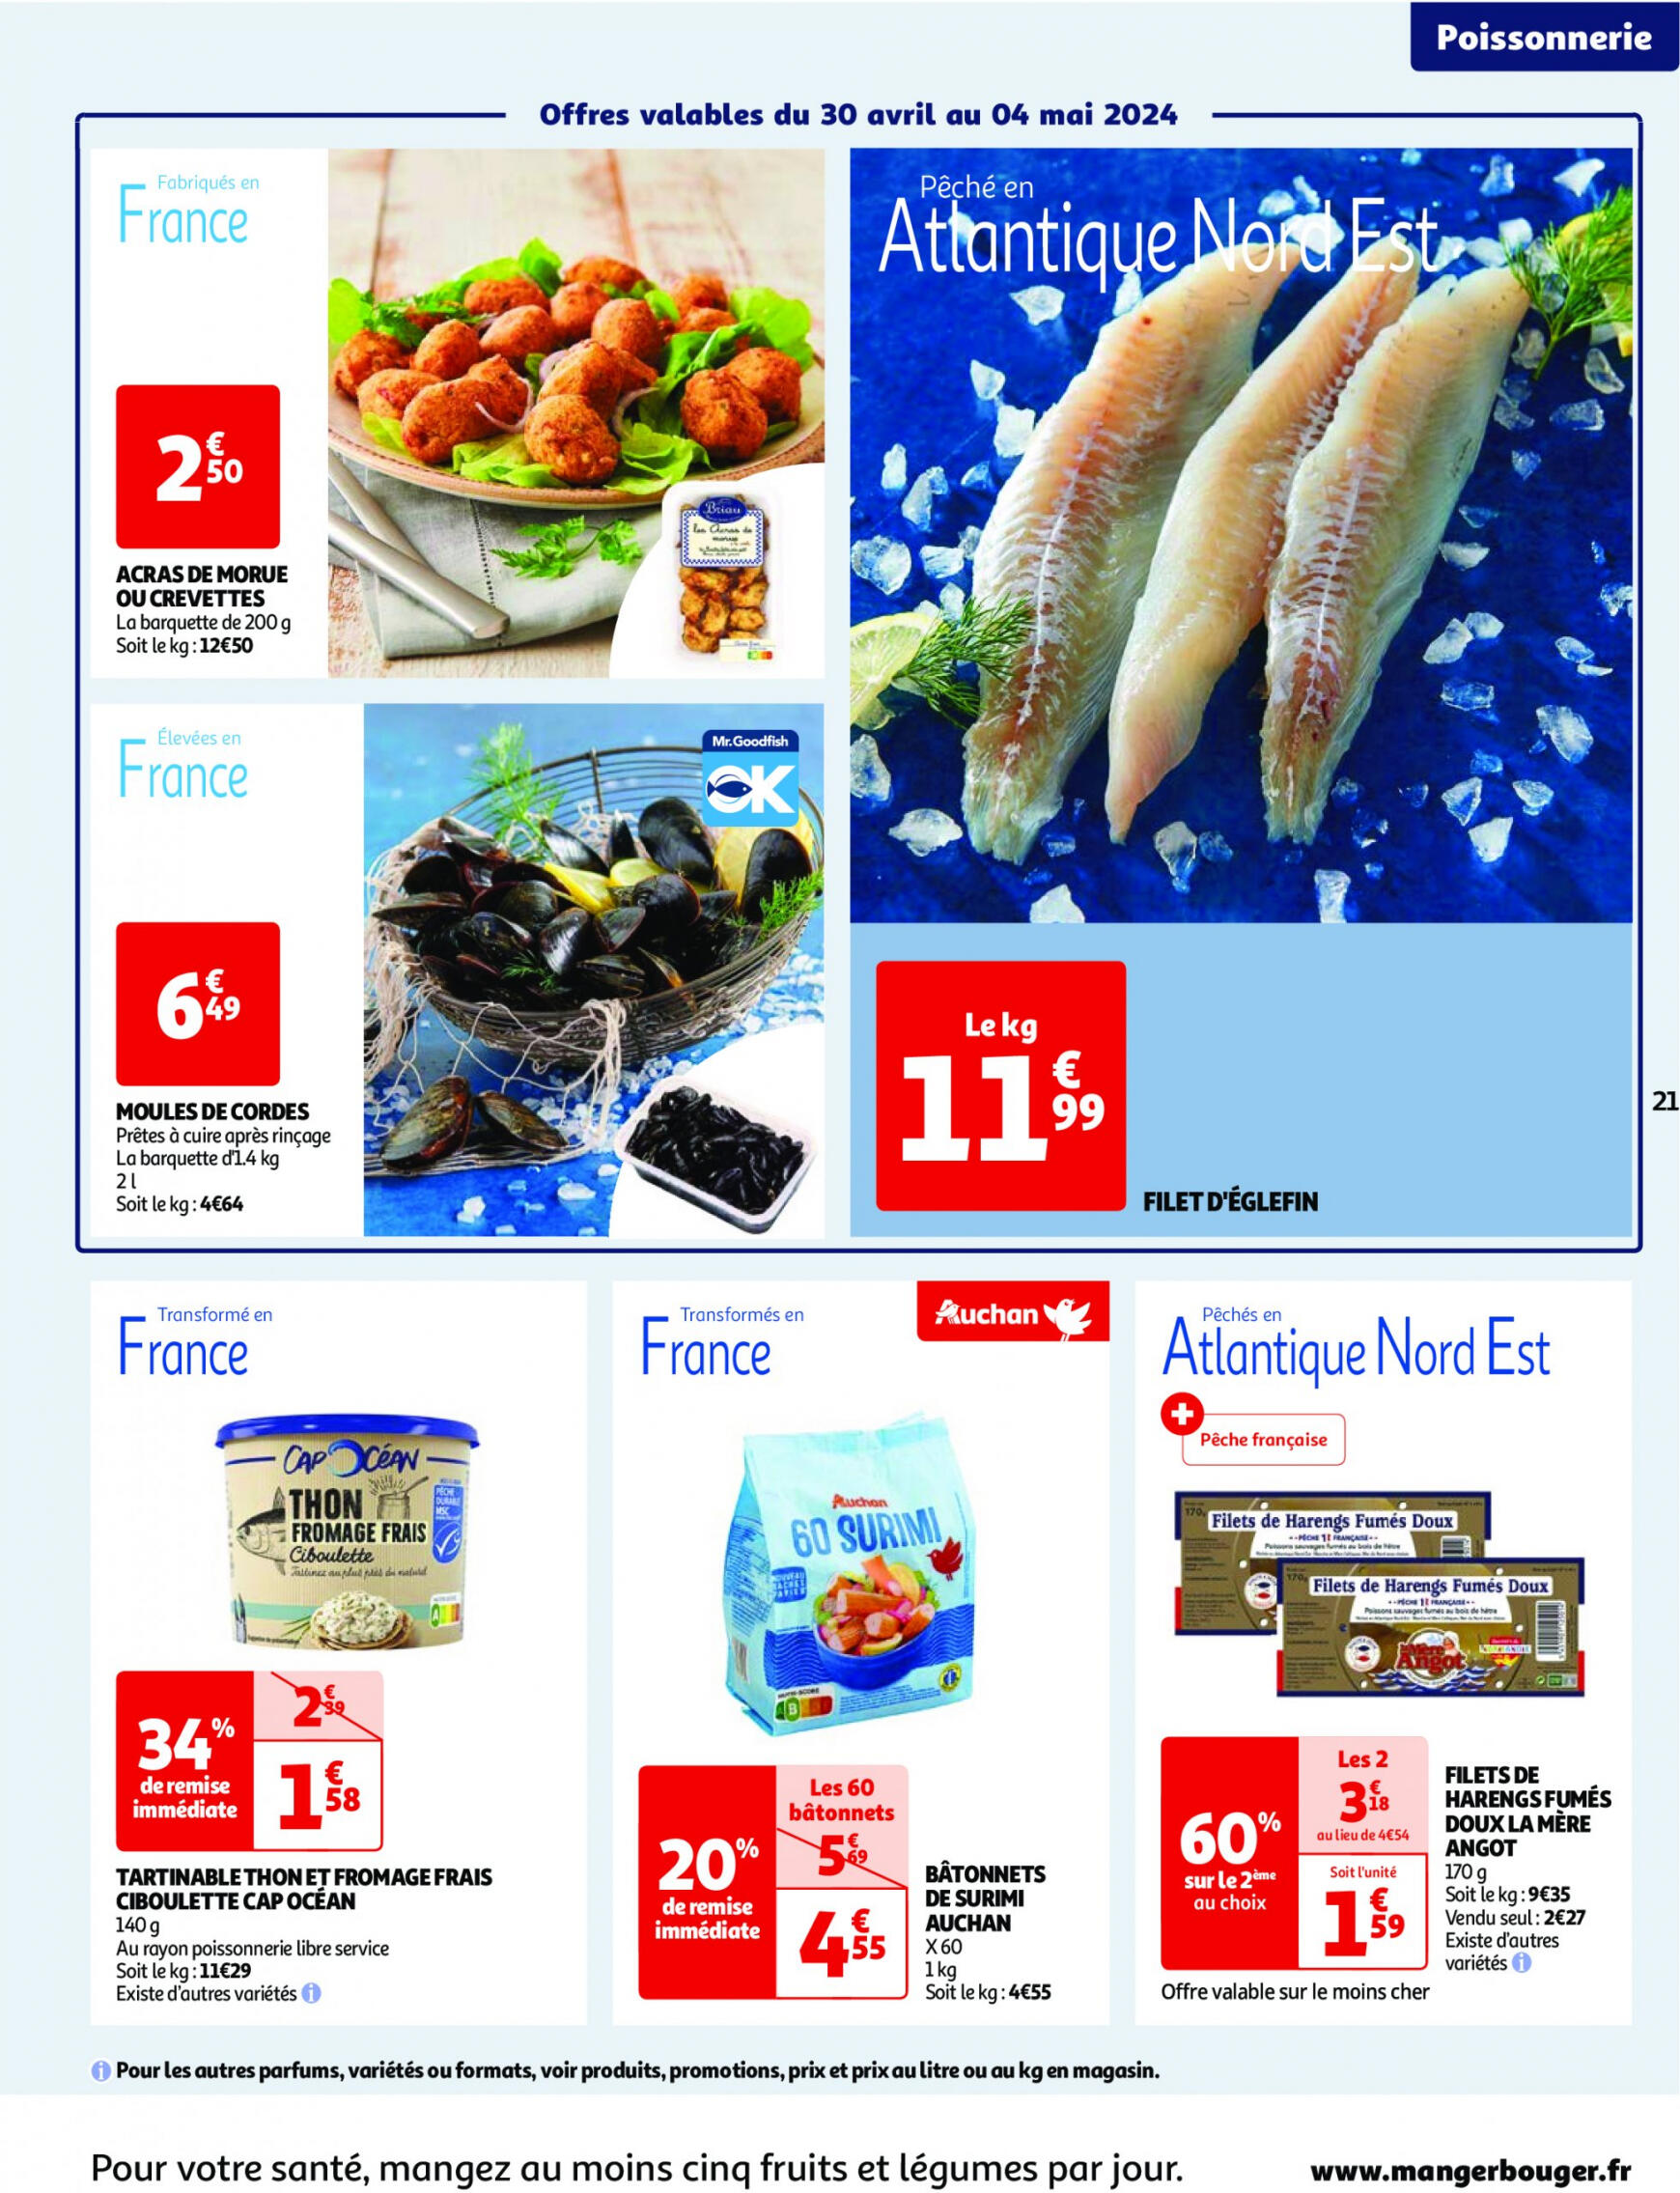 auchan - Prospectus Auchan actuel 30.04. - 06.05. - page: 21